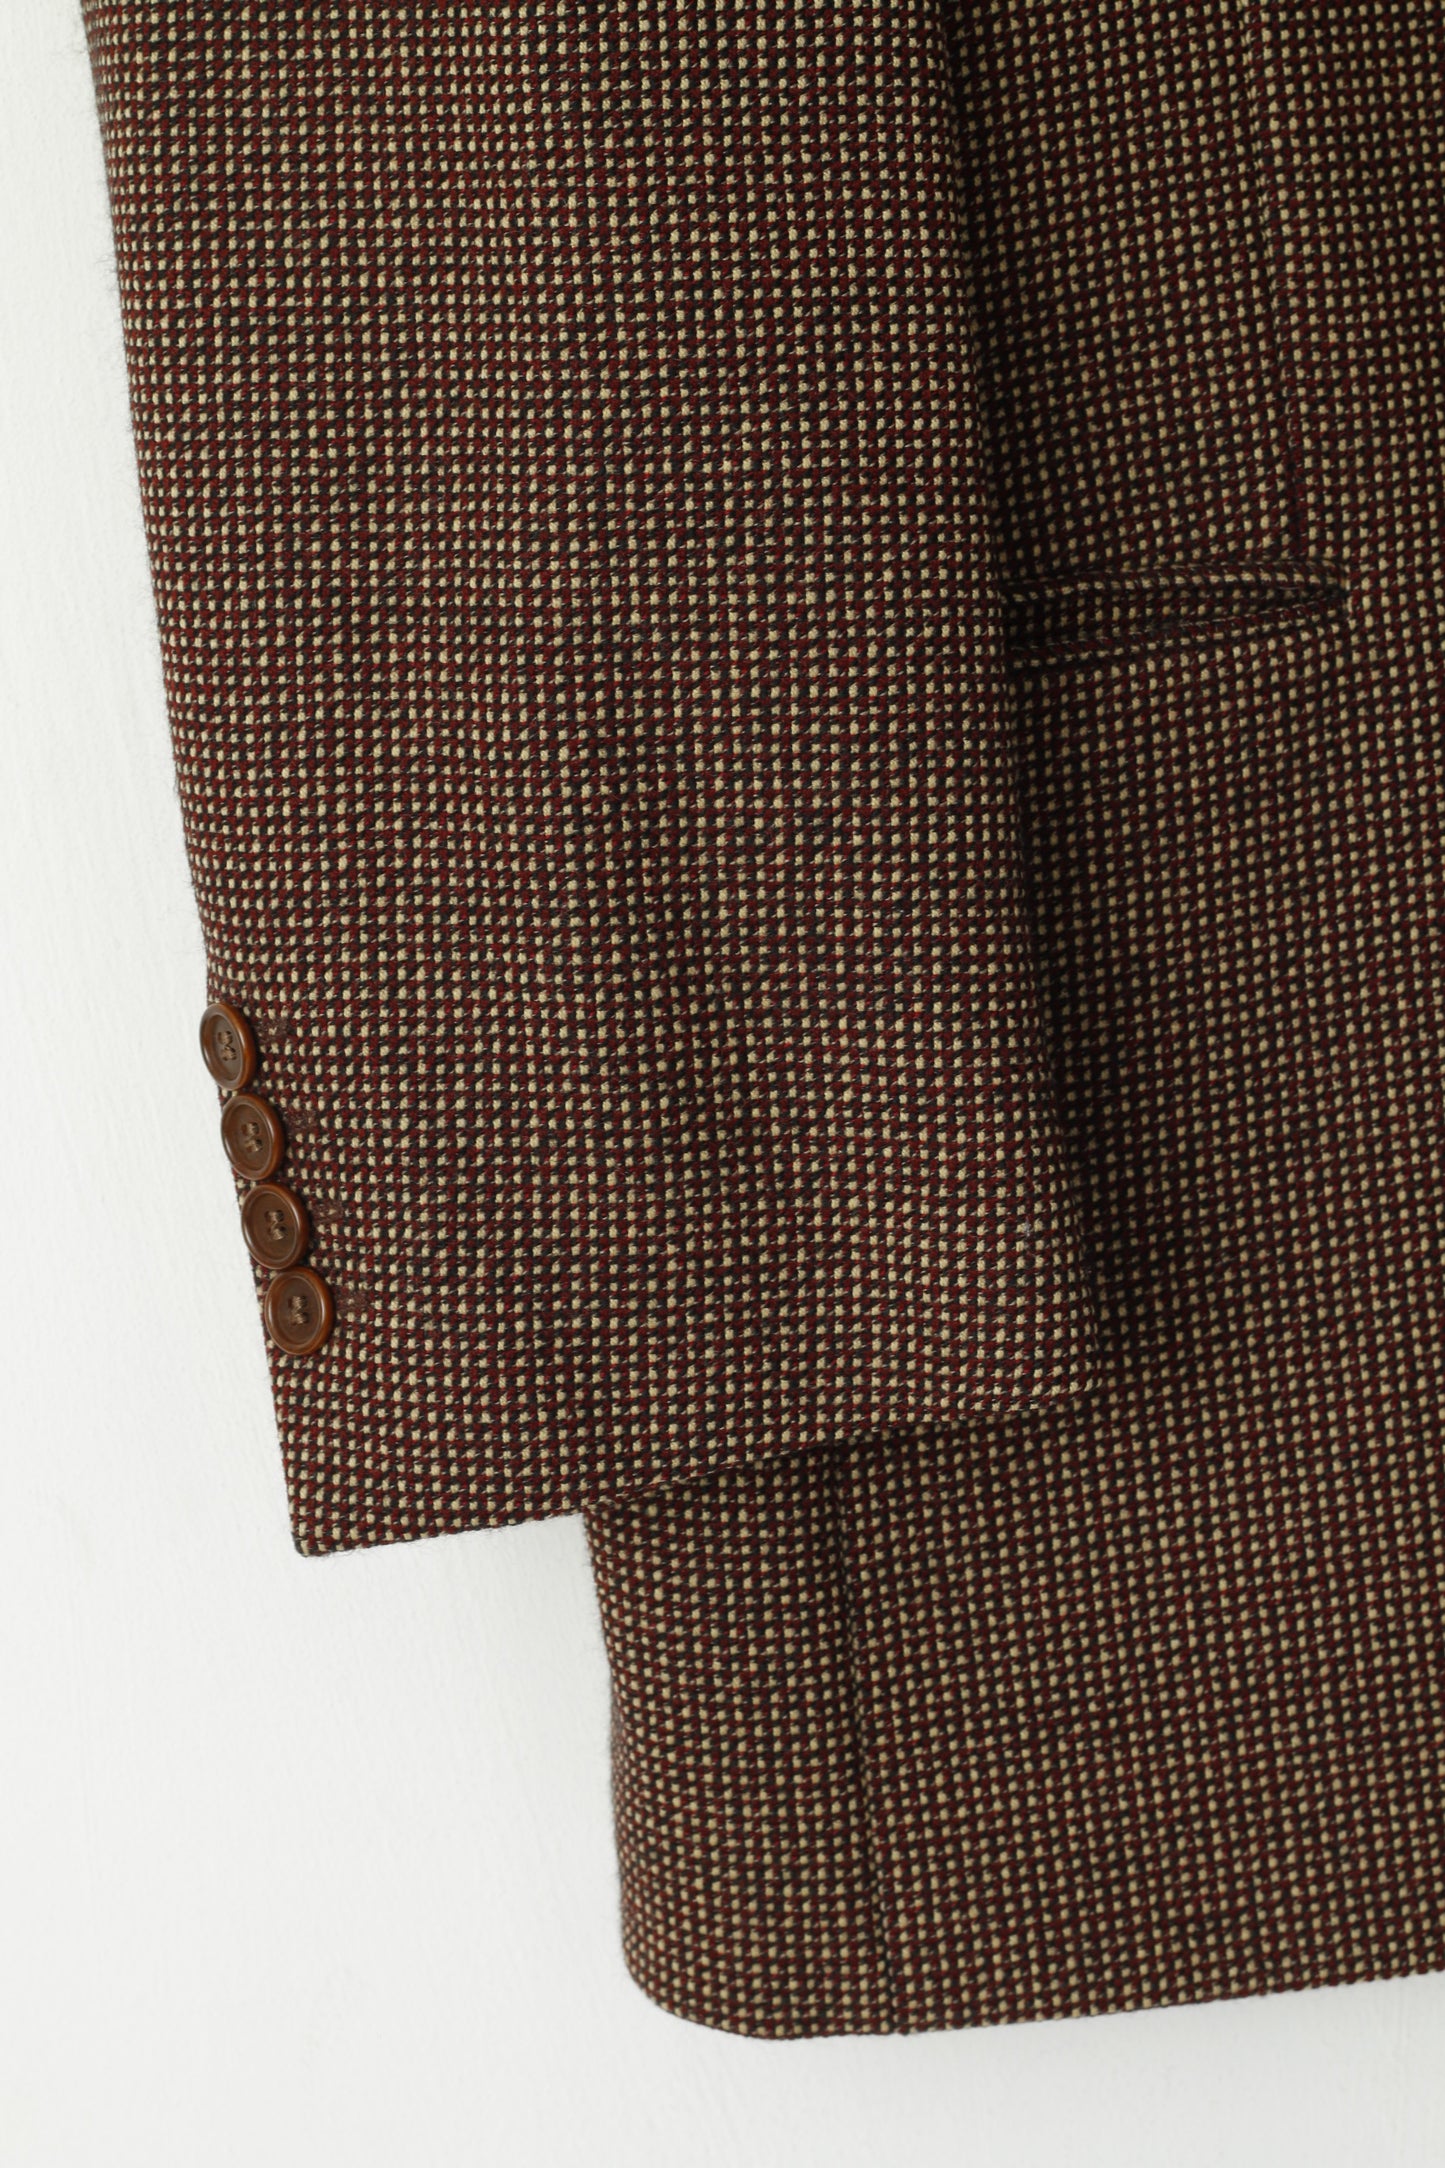 Hugo Boss Men 40 50 Blazer Brown Einstein Wool Look Mr Single Breasted Jacket